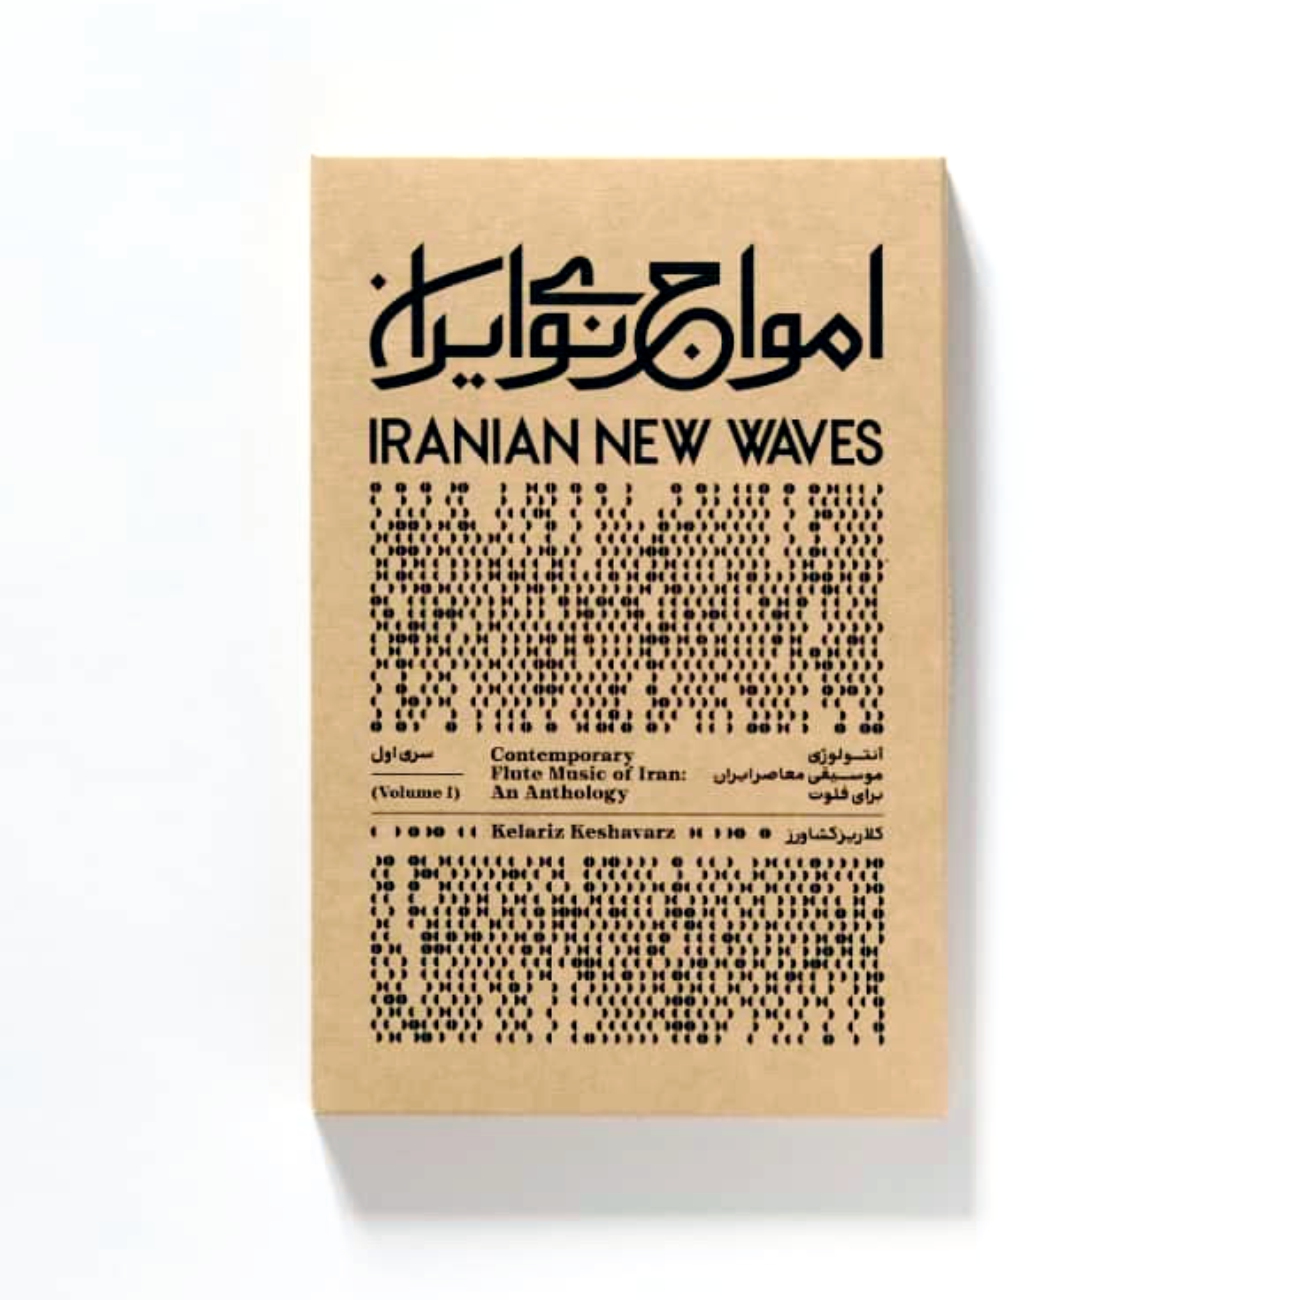 آلبوم امواج نوی ایران-آنتولوژی موسیقی معاصر برای فلوت اثر کلاریز کشاورز